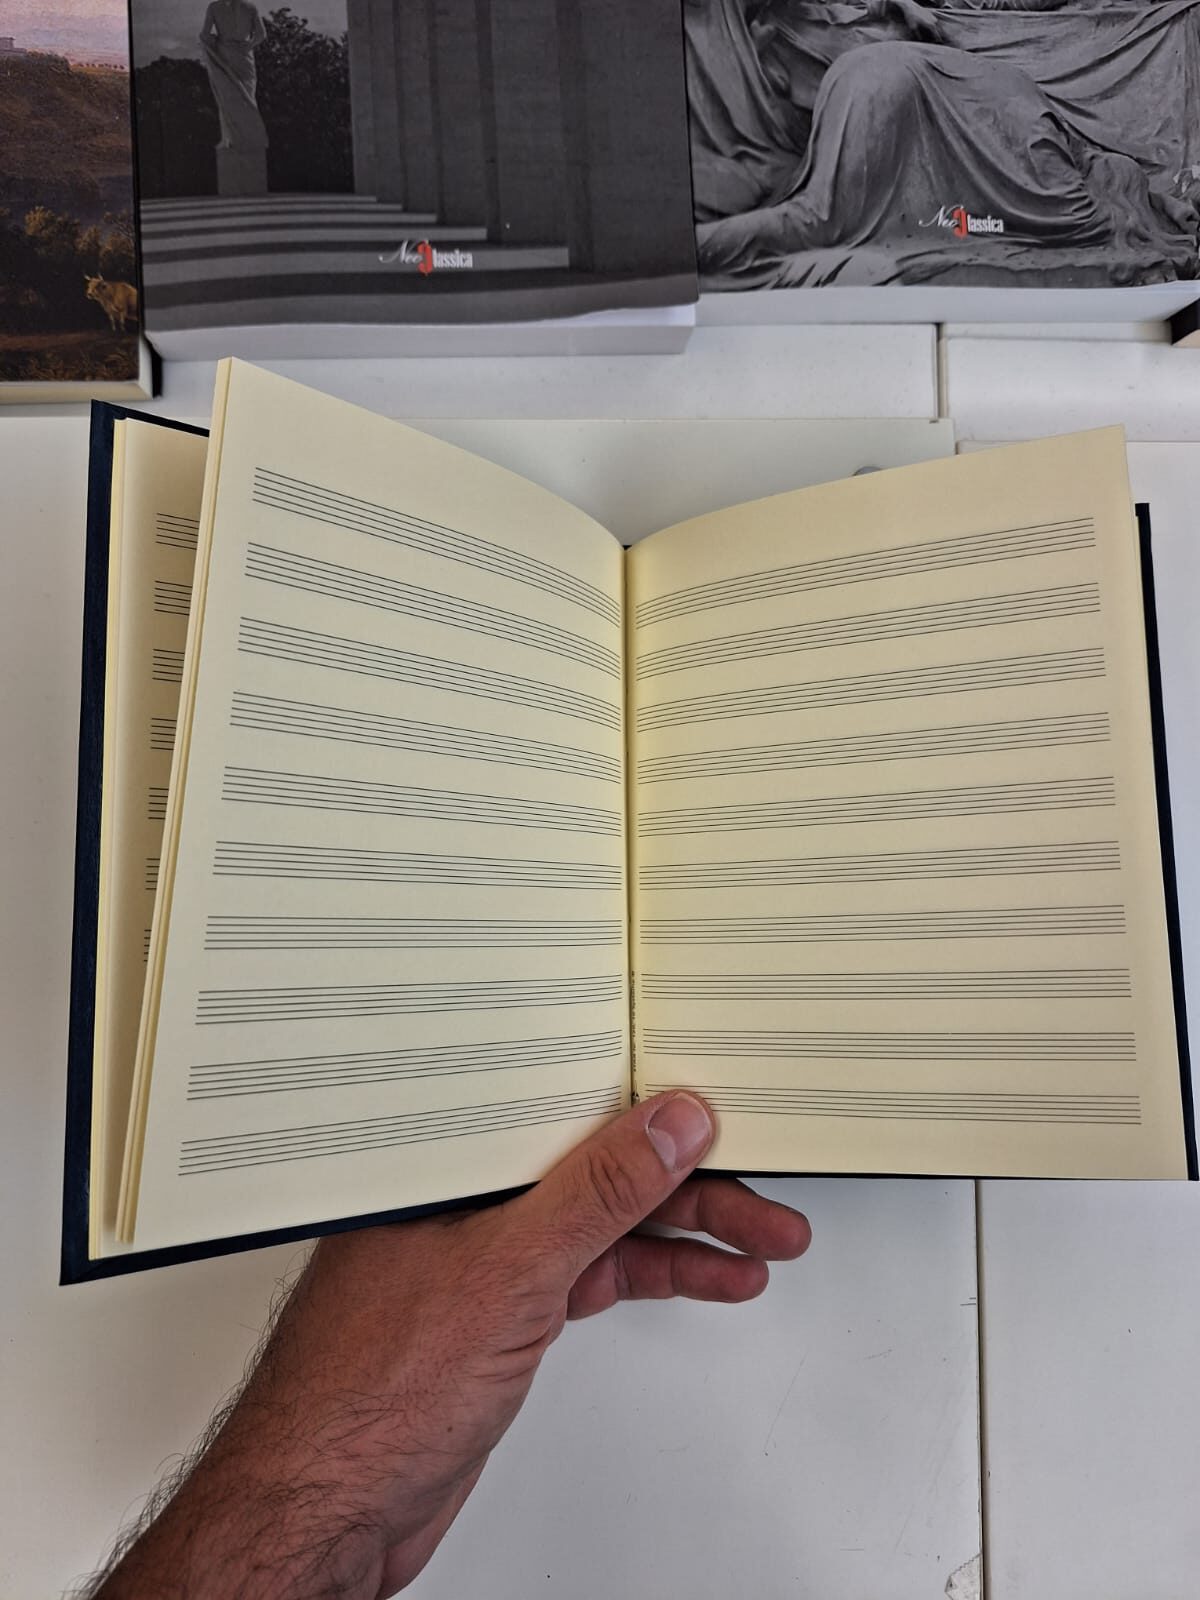 Quaderno pentagrammato 96 pagine, 14x17cm, 10 righe - La Stanza